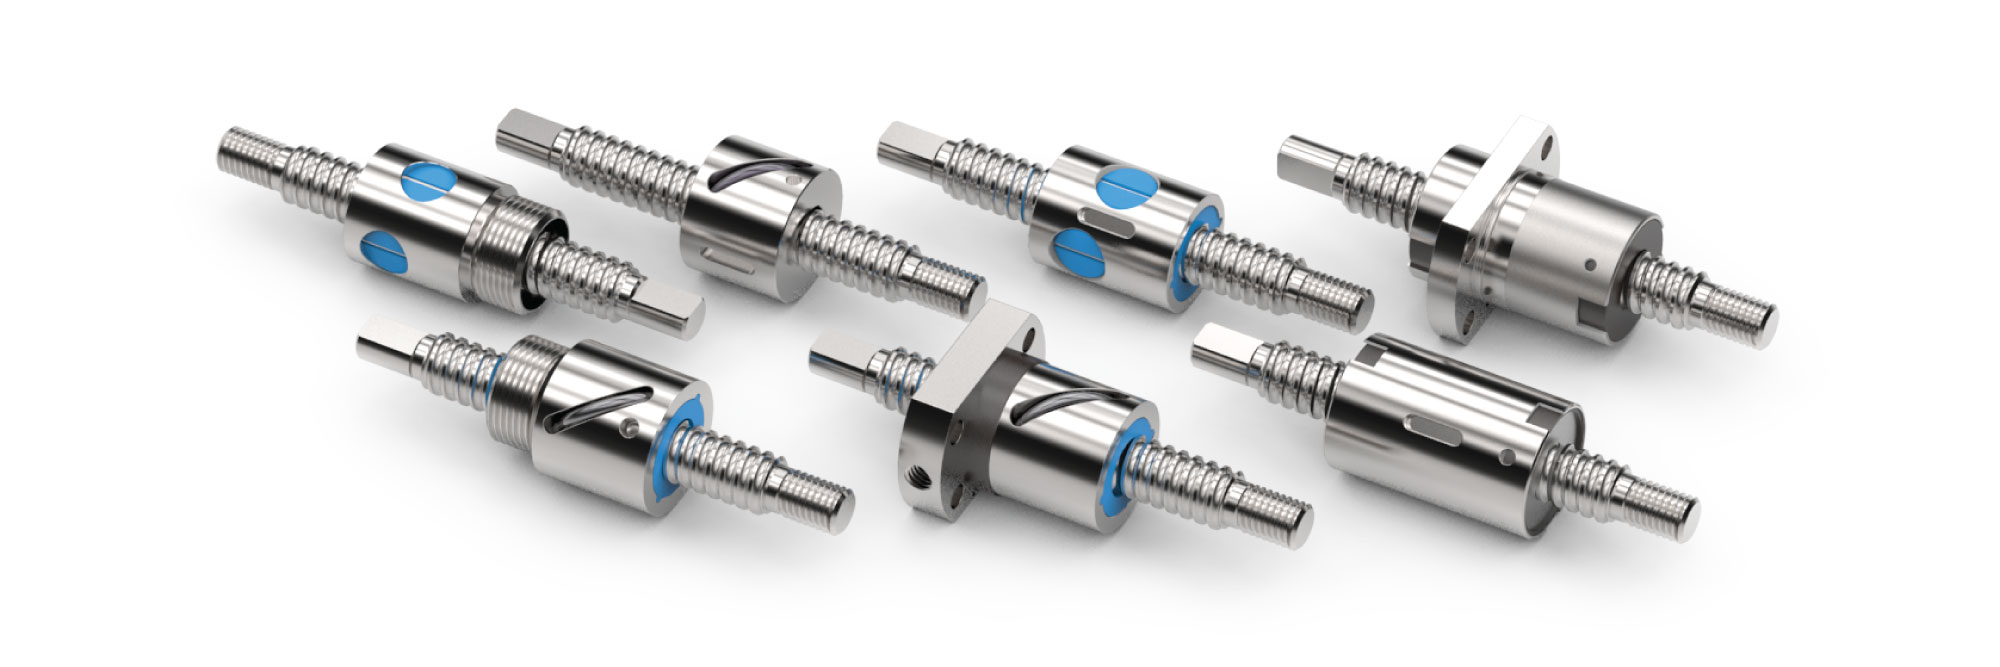 helix-linear-technologies-ball-screws